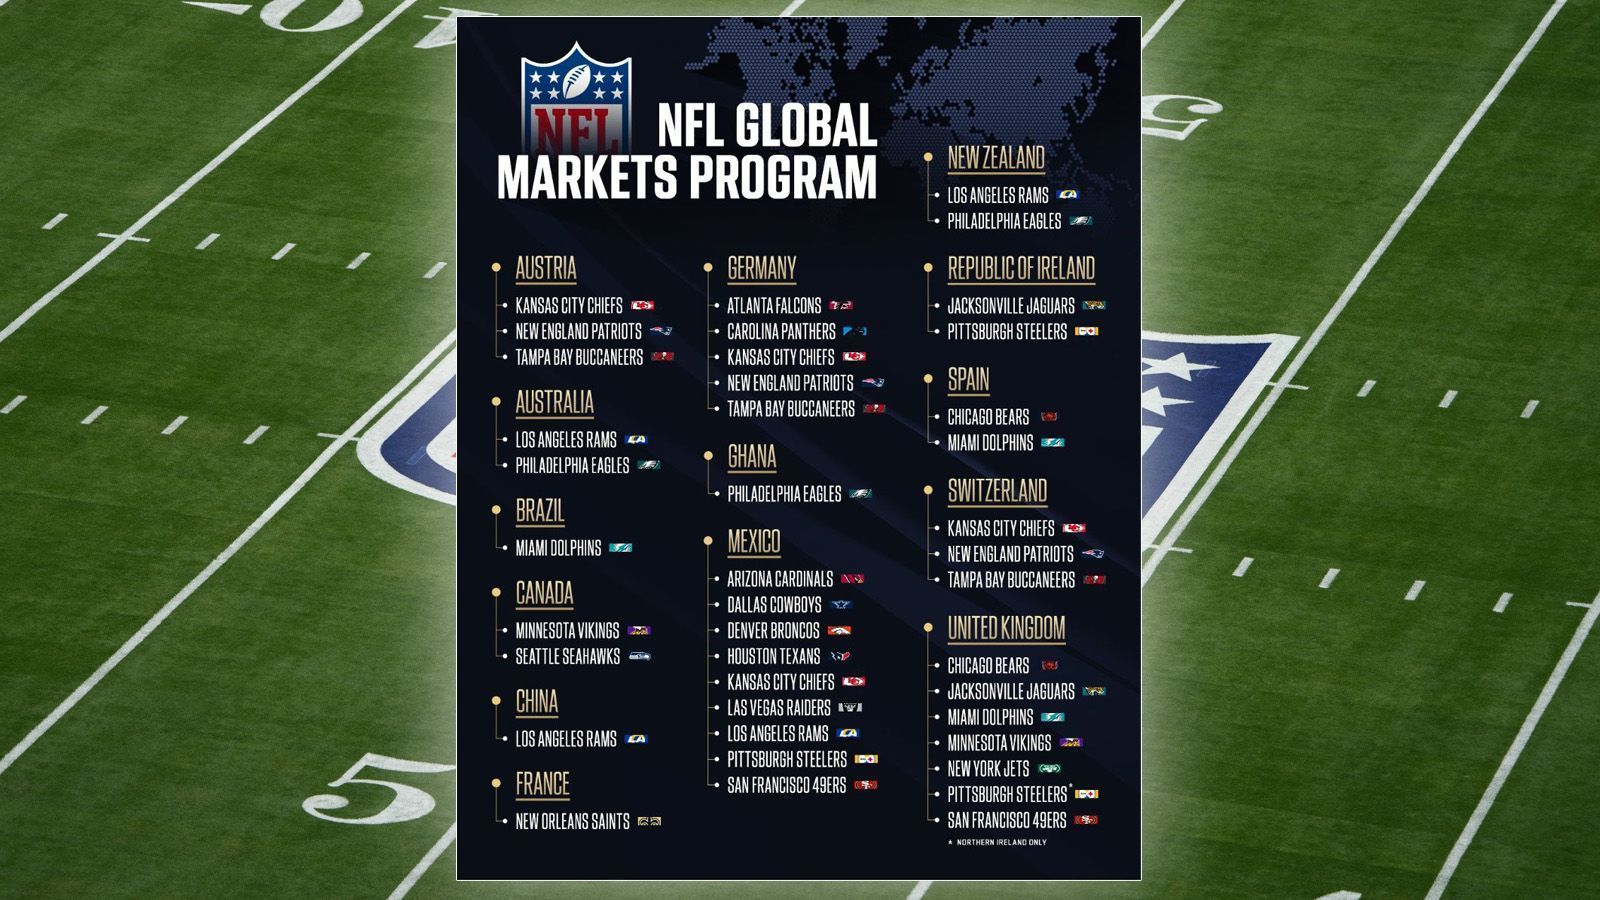 
                <strong>NFL-Weltkarte</strong><br>
                Und hier die NFL-Marketing-Aufteilung im Überblick. Auffällig: Die Kansas City Chiefs stockten gleich doppelt auf und besitzen nun gemeinsam mit den Los Angeles Rams mit vier die meisten Vermarktungsrechte. Die beiden Neulinge Atlanta Falcons sowie New Orleans Saints begnügten sich vorerst mit einem Land, wobei die Saints in Frankreich aber gleichzeitig die erste und einzige Franchise sind. Nur noch elf Teams konzentrieren sich weiterhin komplett auf den heimischen Markt. Das sind die Buffalo Bills, die Baltimore Ravens, die Cleveland Browns, die Cincinnati Bengals, die Tennessee Titans, die Indianapolis Colts, die Los Angeles Chargers, die Washington Commanders, die New York Giants, die Green Bay Packers und die Detroit Lions.
              